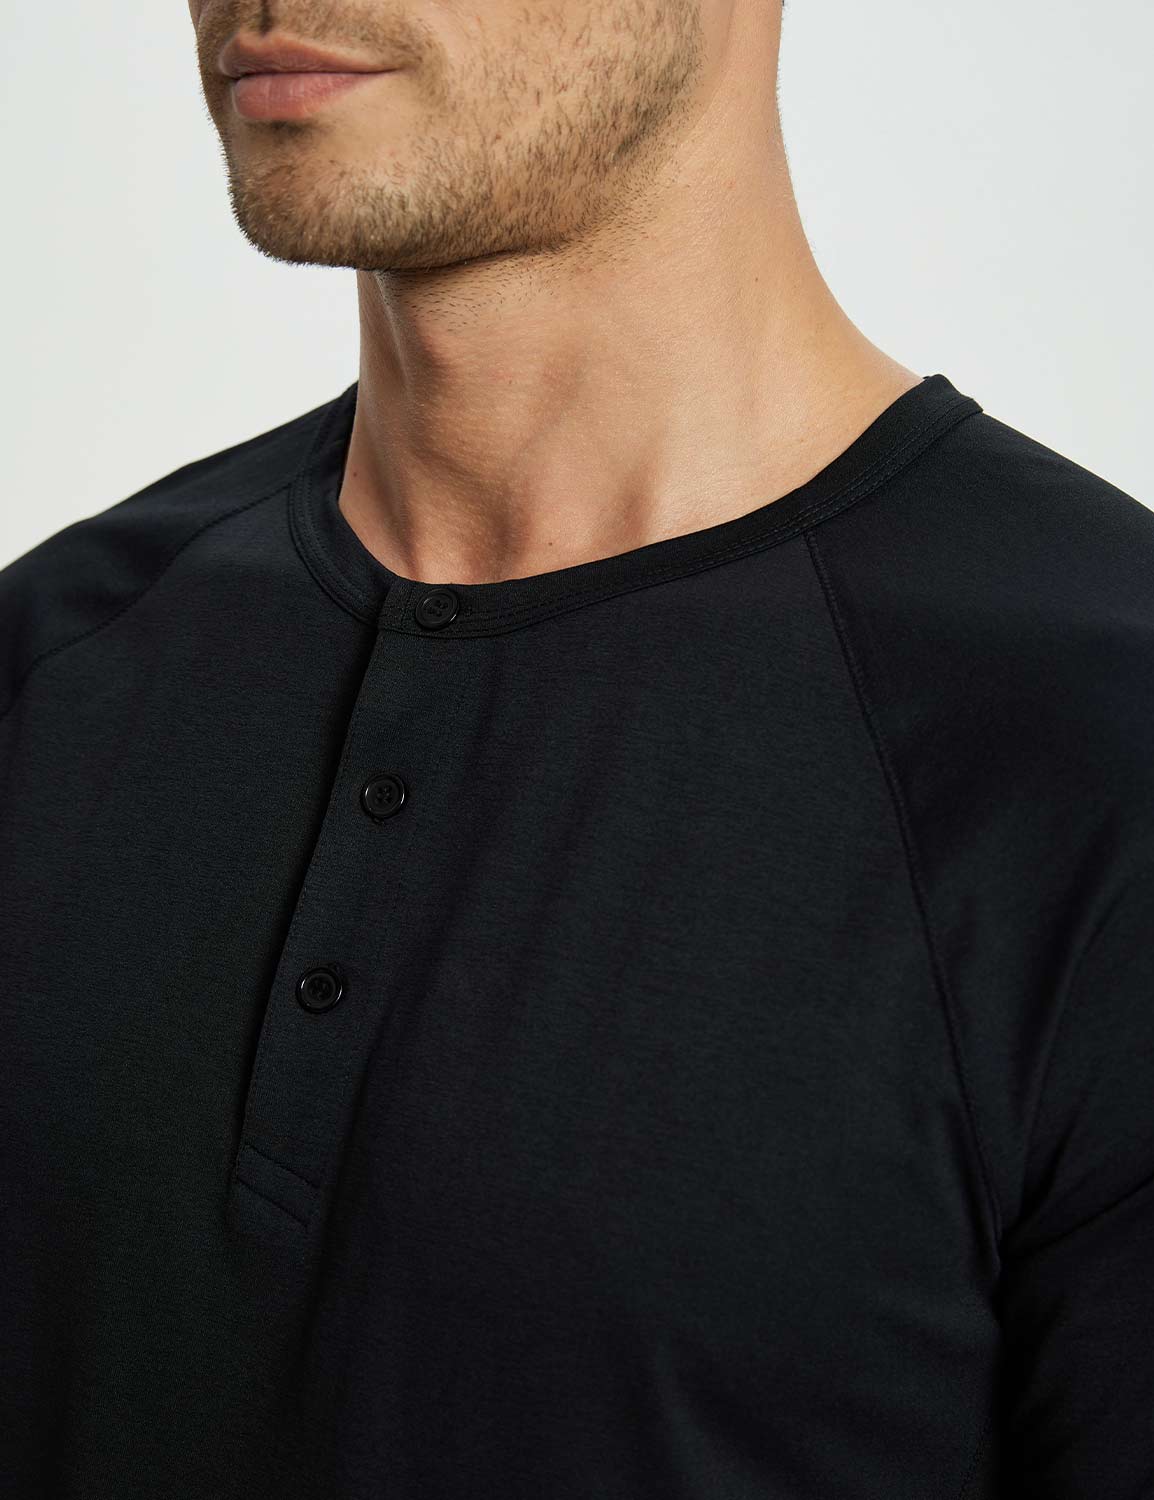 Baleaf Men's Short-Sleeve Henley T-Shirt (Website Exclusive) dbd067 Jet Black Details